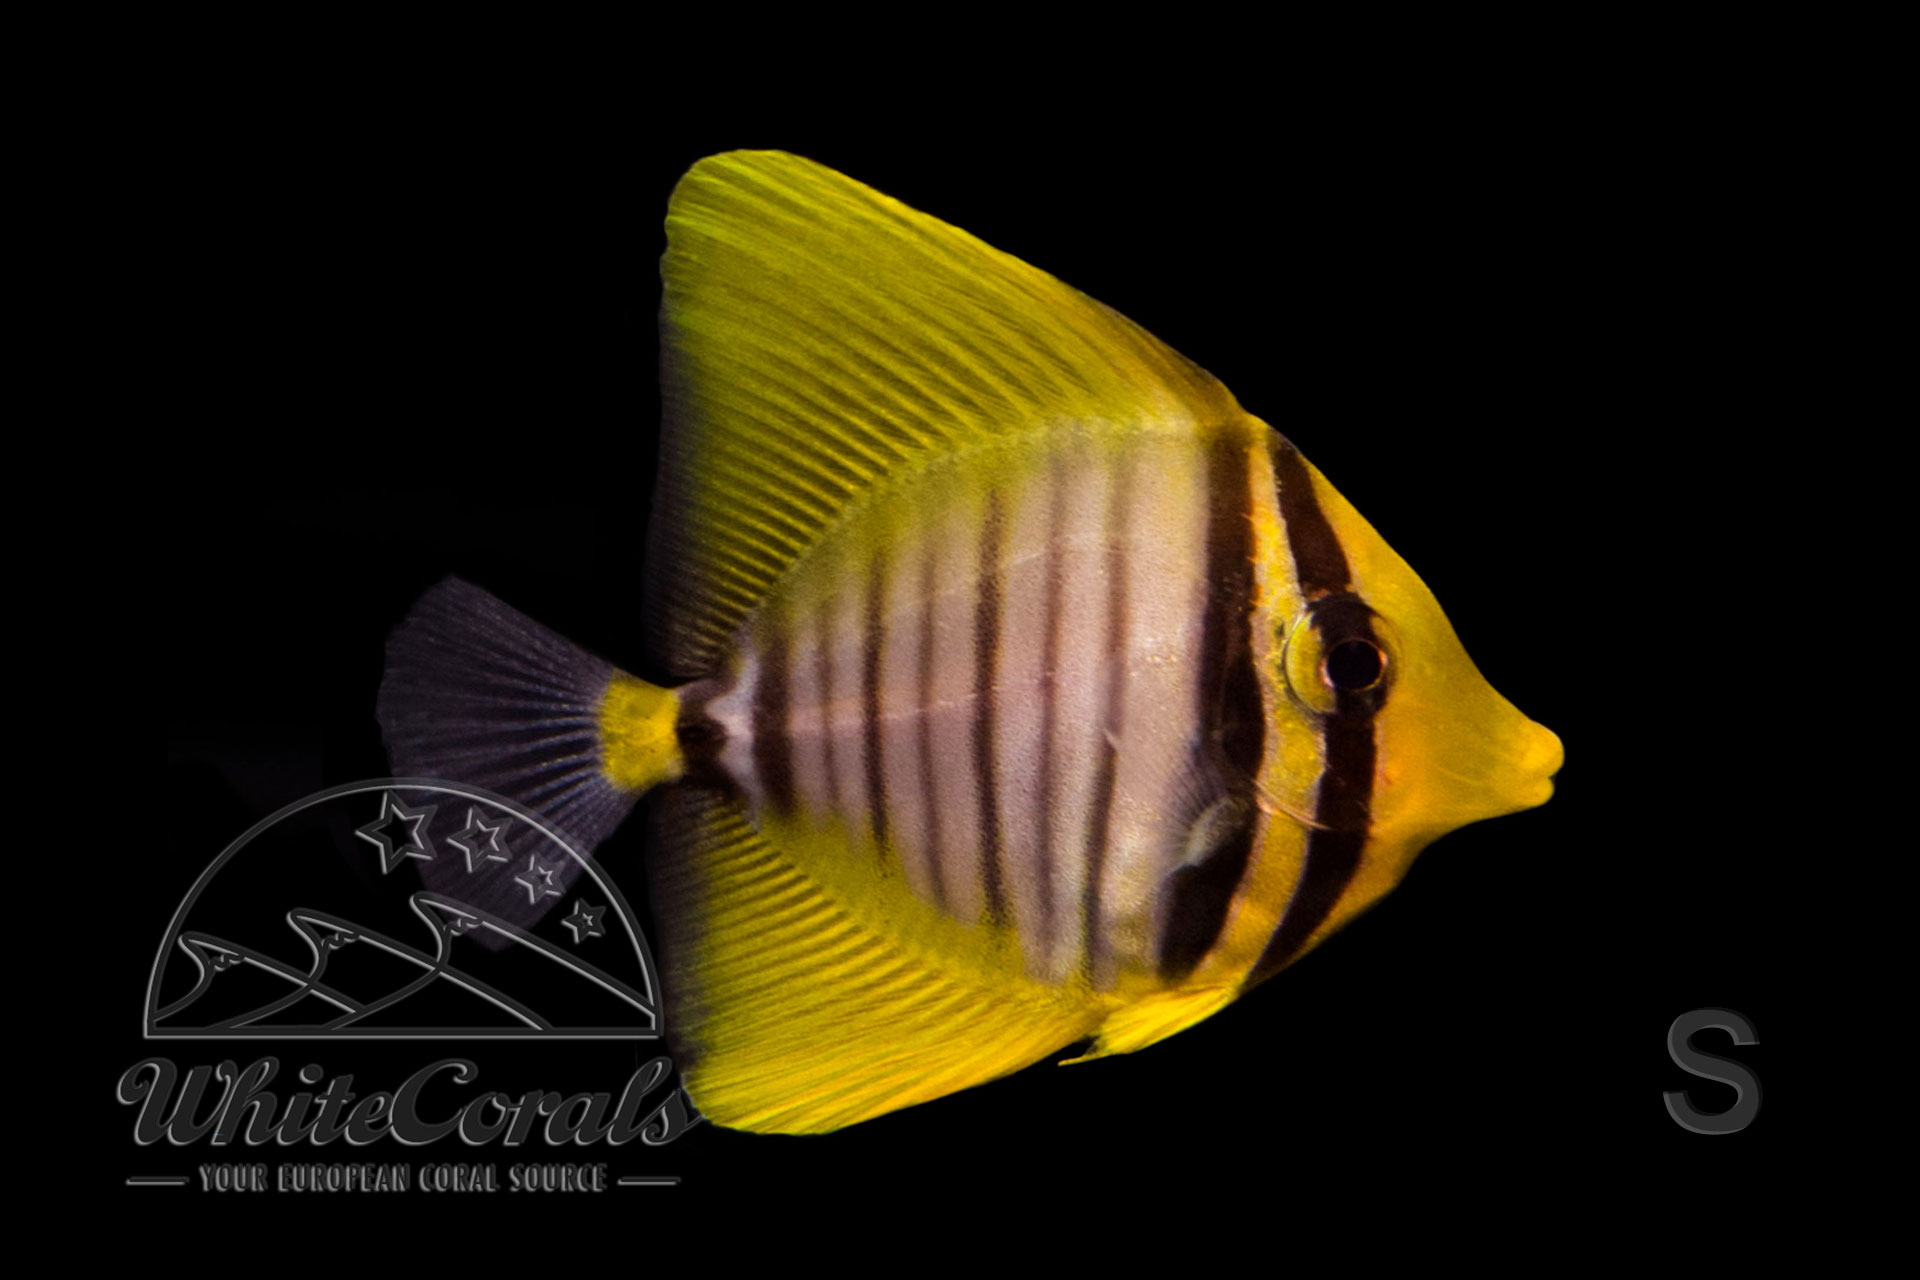 Zebrasoma veliferum - Pazifischer Segelflossen-Doktorfisch (Größe S)